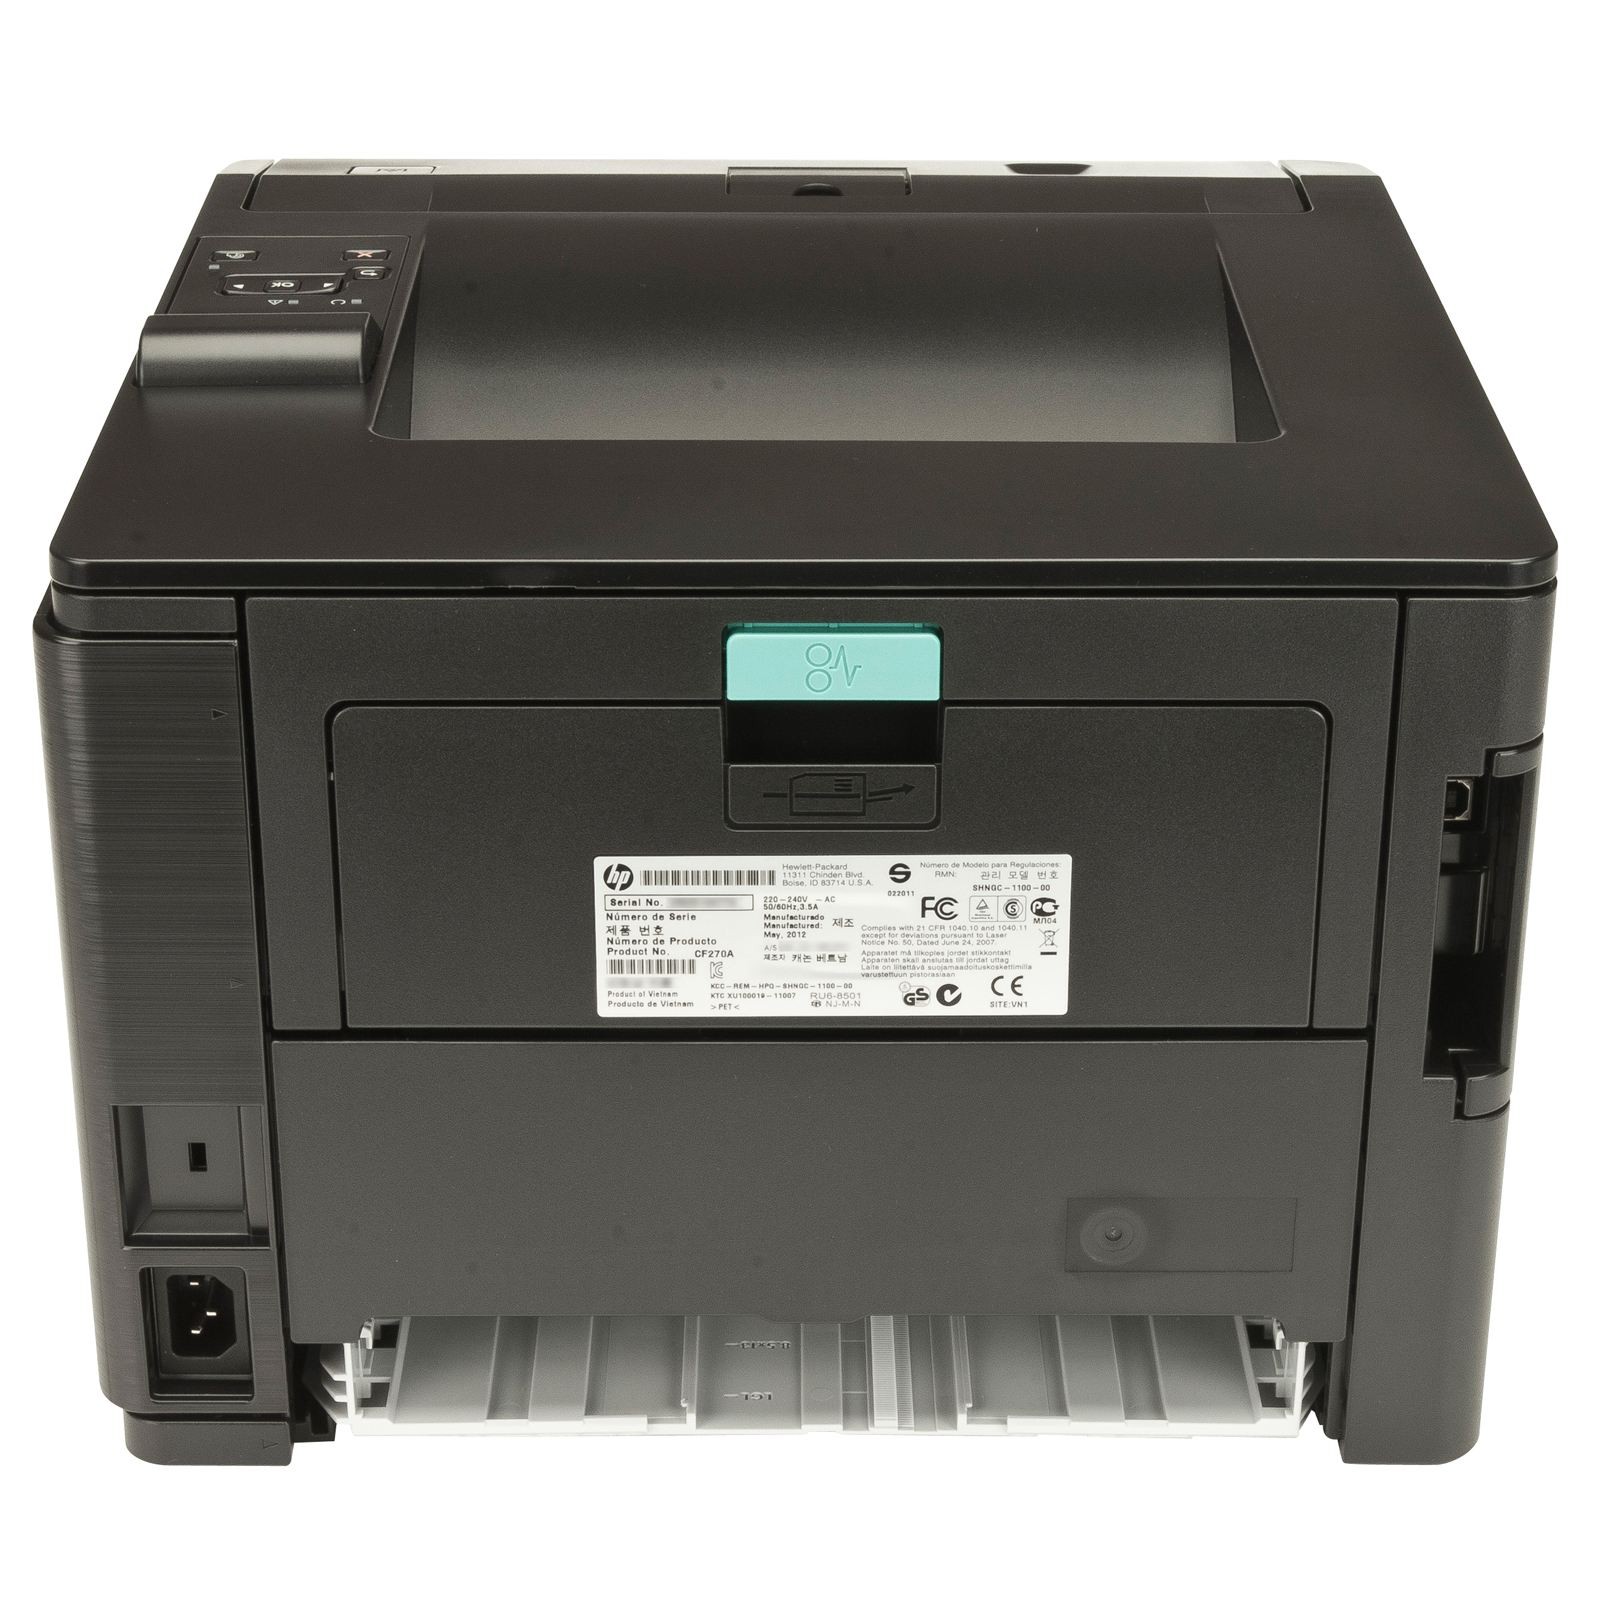 Imprimante Hp Laserjet Pro 400 M401A : 1 / Il a une résolution maximale de 1 hp pro 400 m401a ...